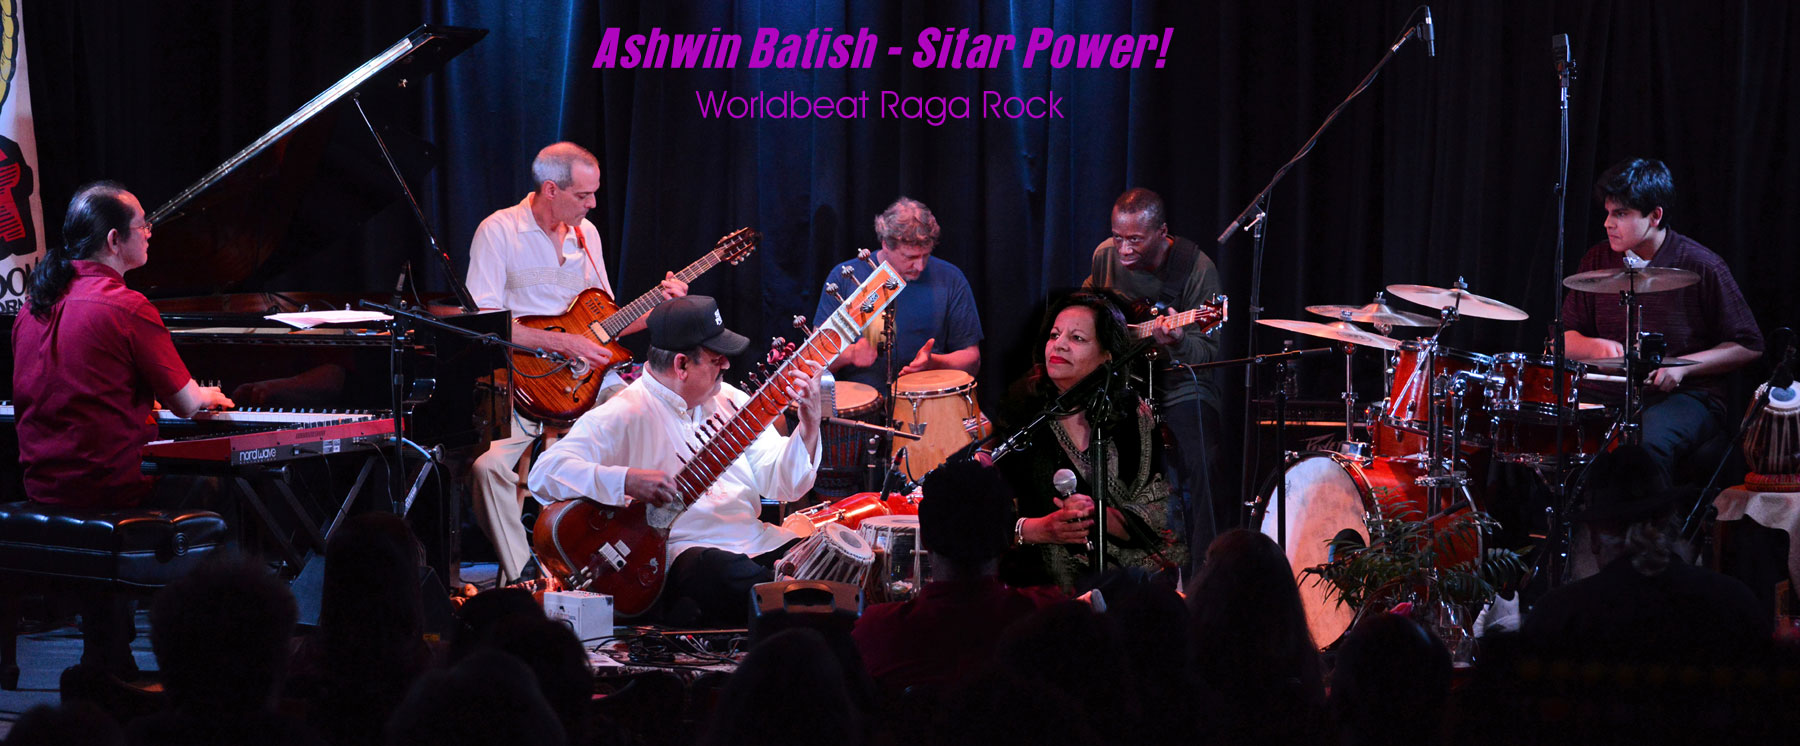 World Beat Raga Rock! Ashwin Batish with his Sitar Power group - live at the Kuumbwa Jazz Center, Santa Cruz. All rights reserved. 2012 Ashwin Batish. Copyrighted image